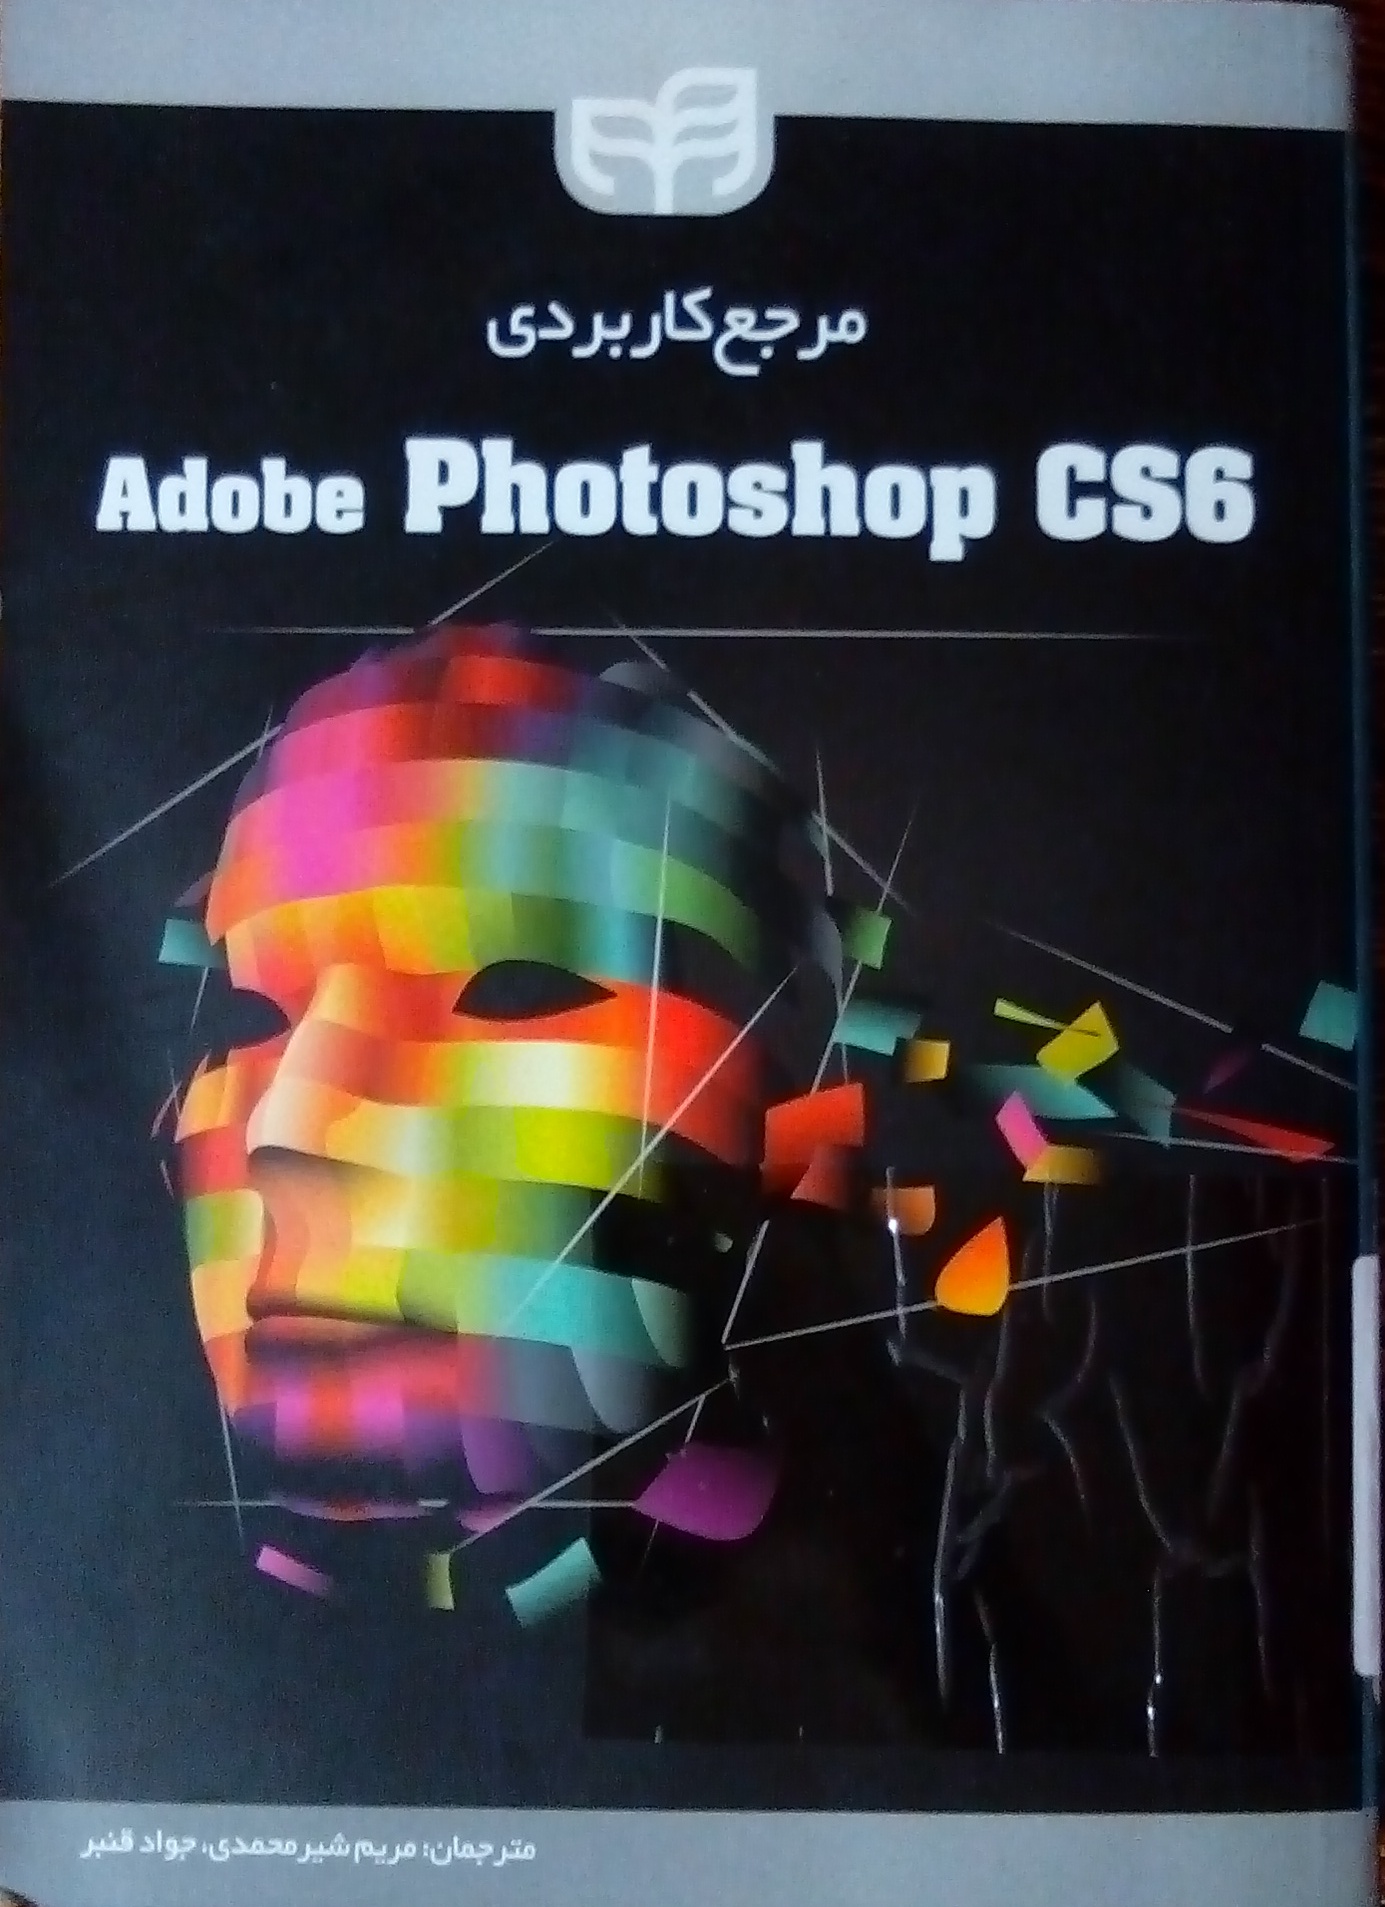 مرجع کاربردی Adobe Photoshop CS6